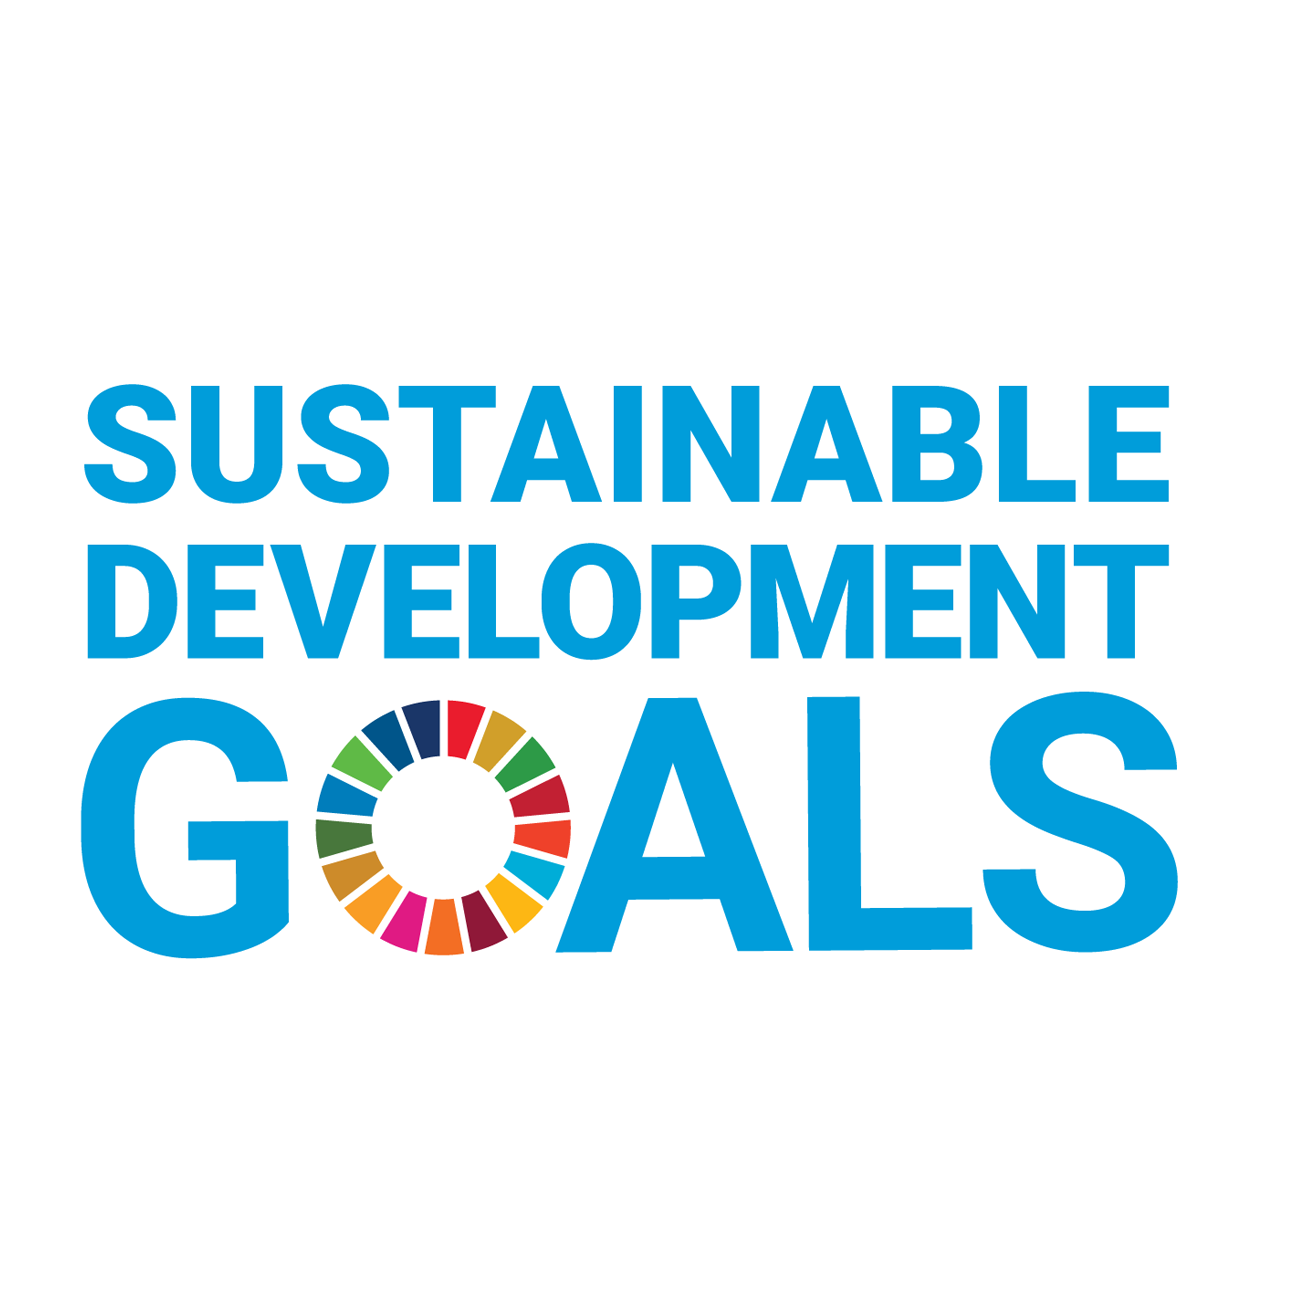 SDGs_all